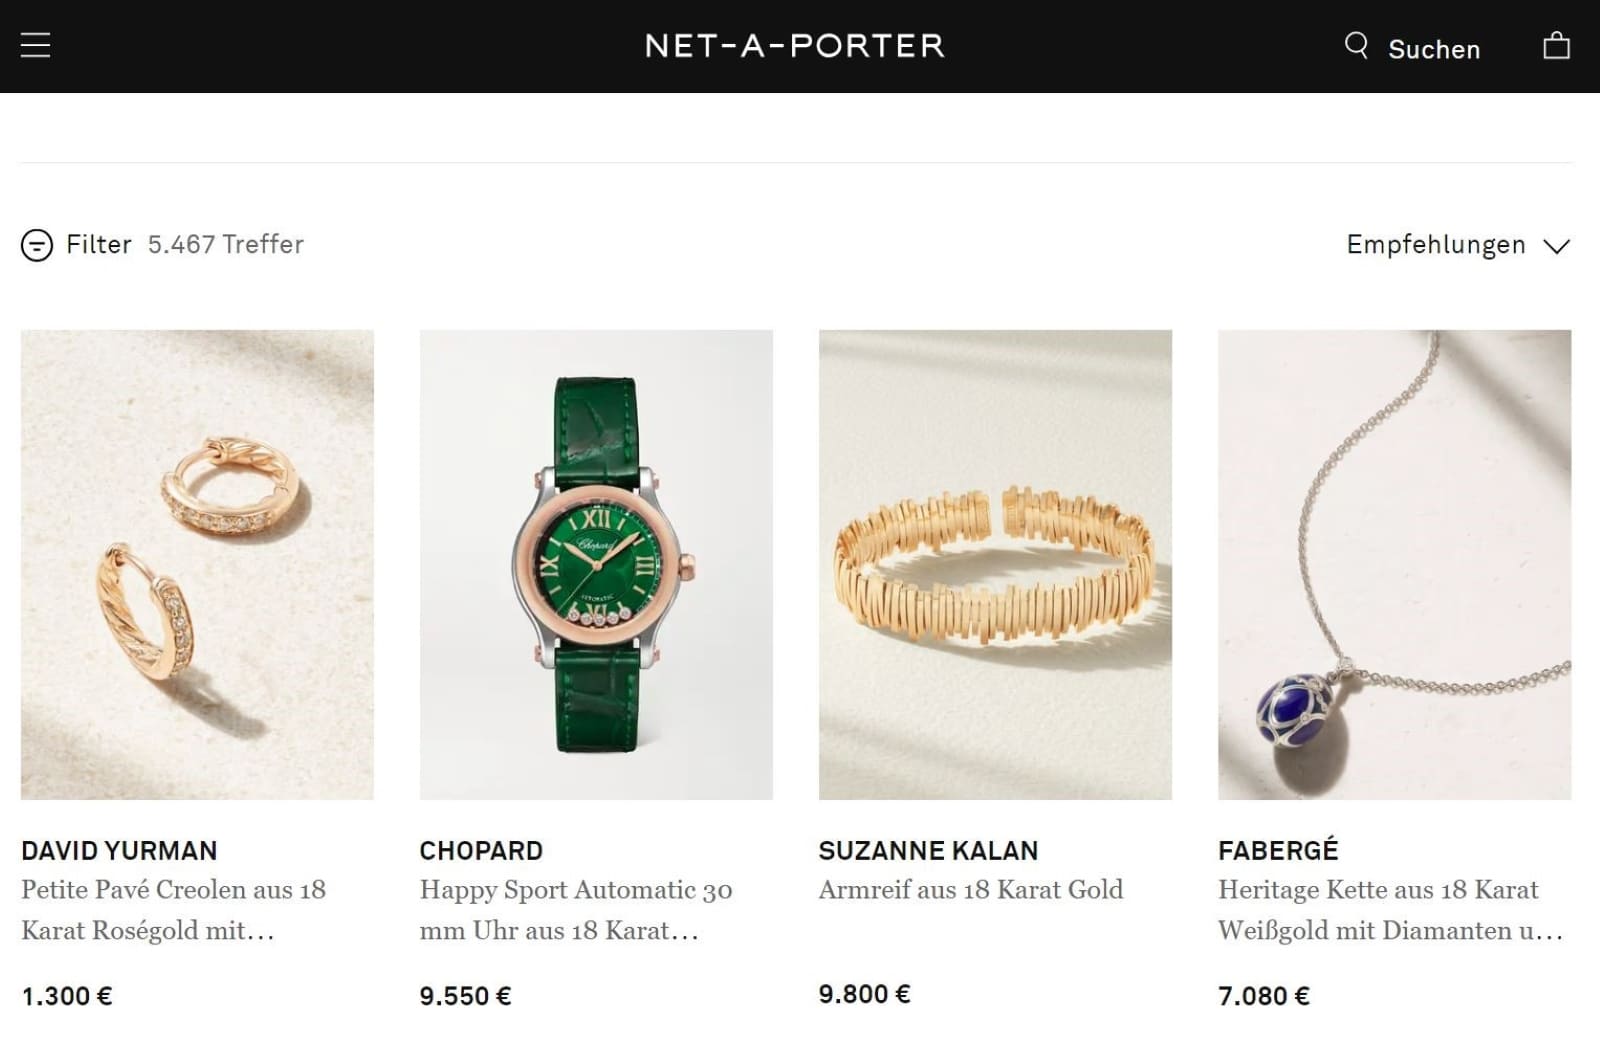 Net-a-porter Online-Shop von Richemont